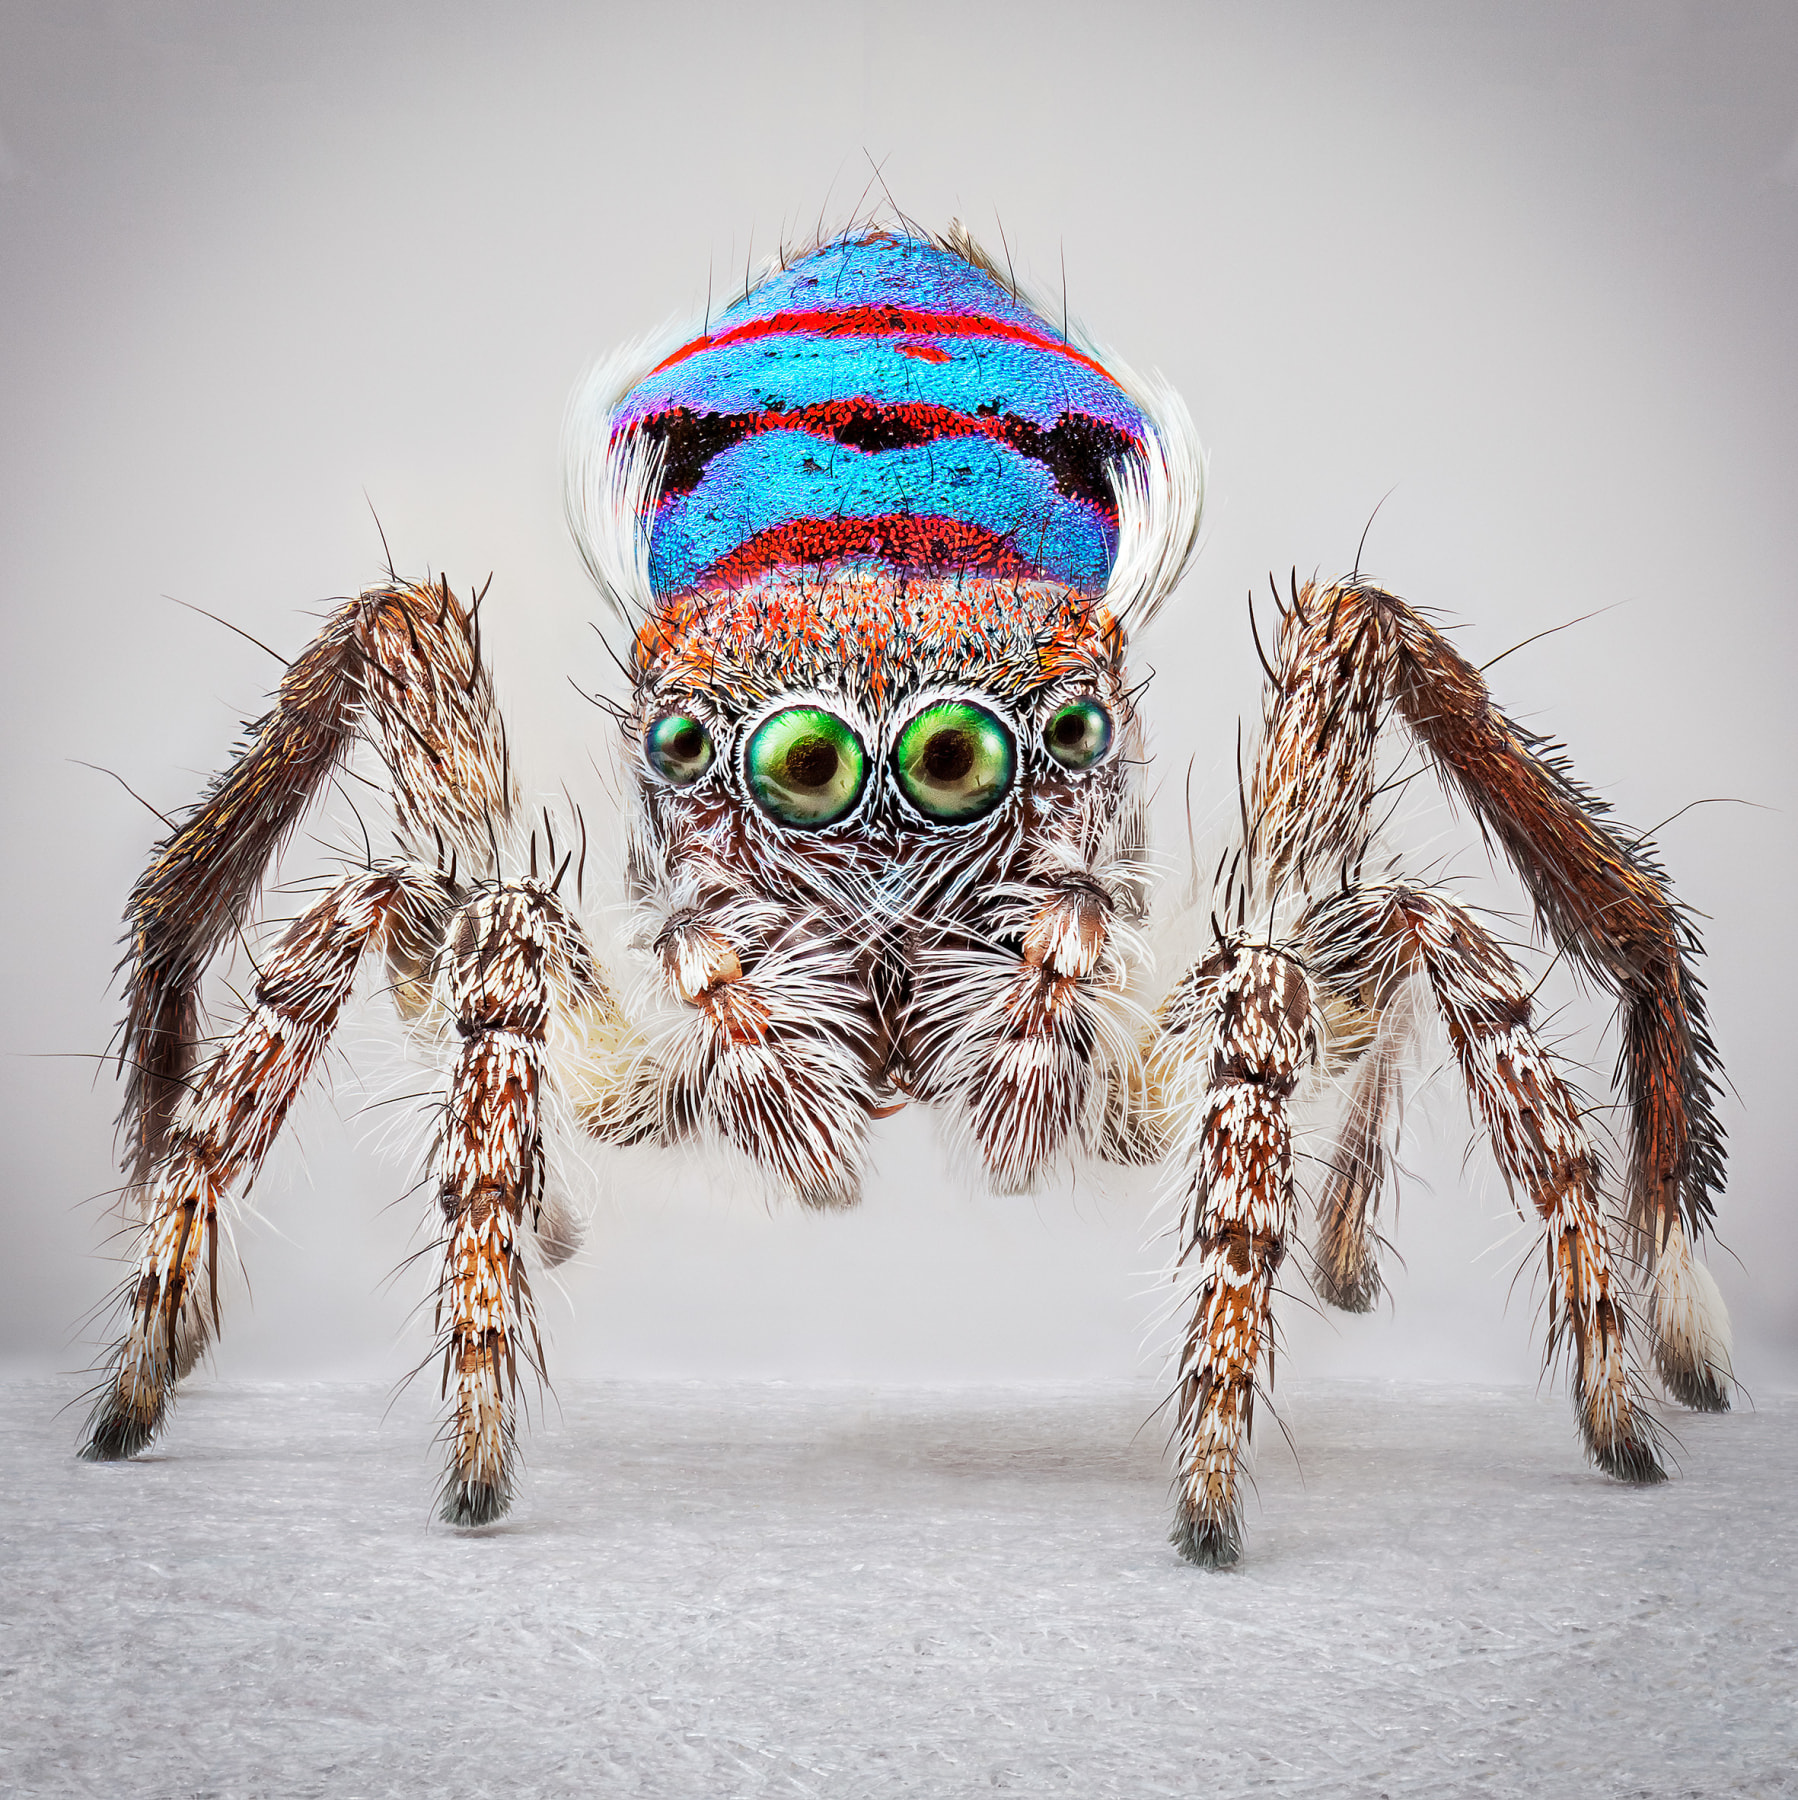 Maria Fernanda Cardoso,&nbsp;Spiders of Paradise: Maratus speciosus from the Actual Size III. Ed. 3/5 [Ed. 5 + 2AP], 2018,&nbsp;Deep focus microscopy, pigment print on premium photo paper,&nbsp;60 x 60 in. (152.4 x 152.4 cm.)